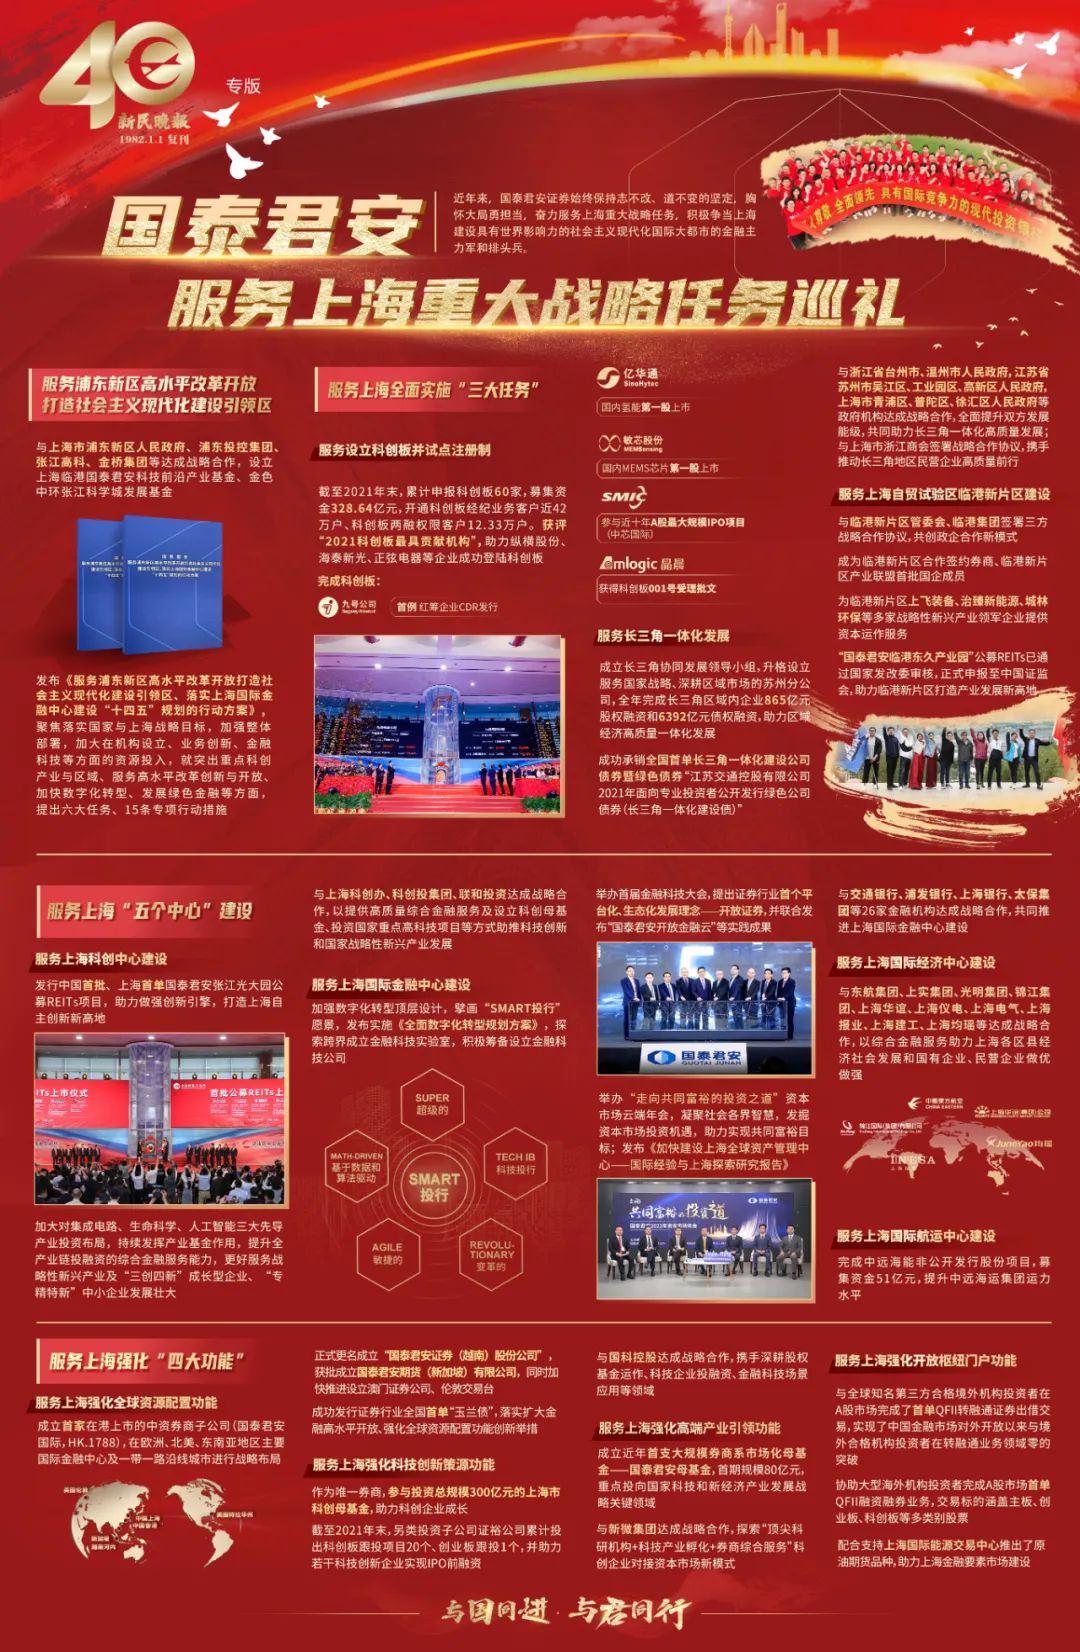 新民晚报 | 国泰君安服务上海重大战略任务巡礼(国泰君安期货新加坡子公司)